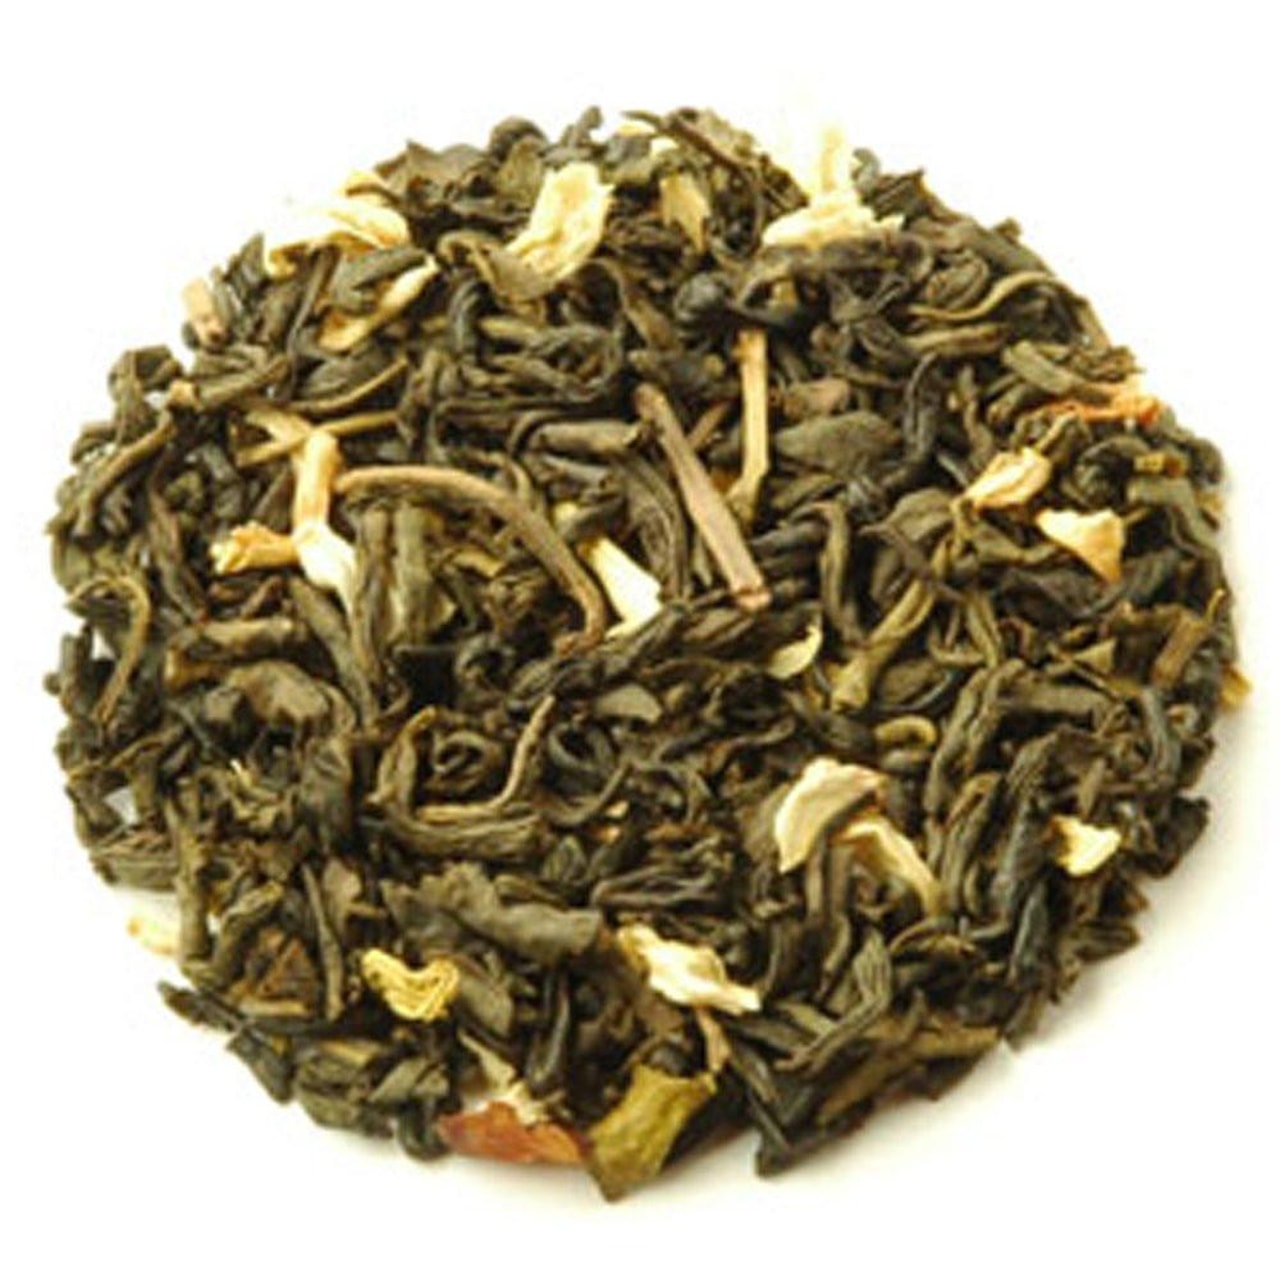 Jasmine Tea - zelený čaj s květy jasmínu, balení 100 g